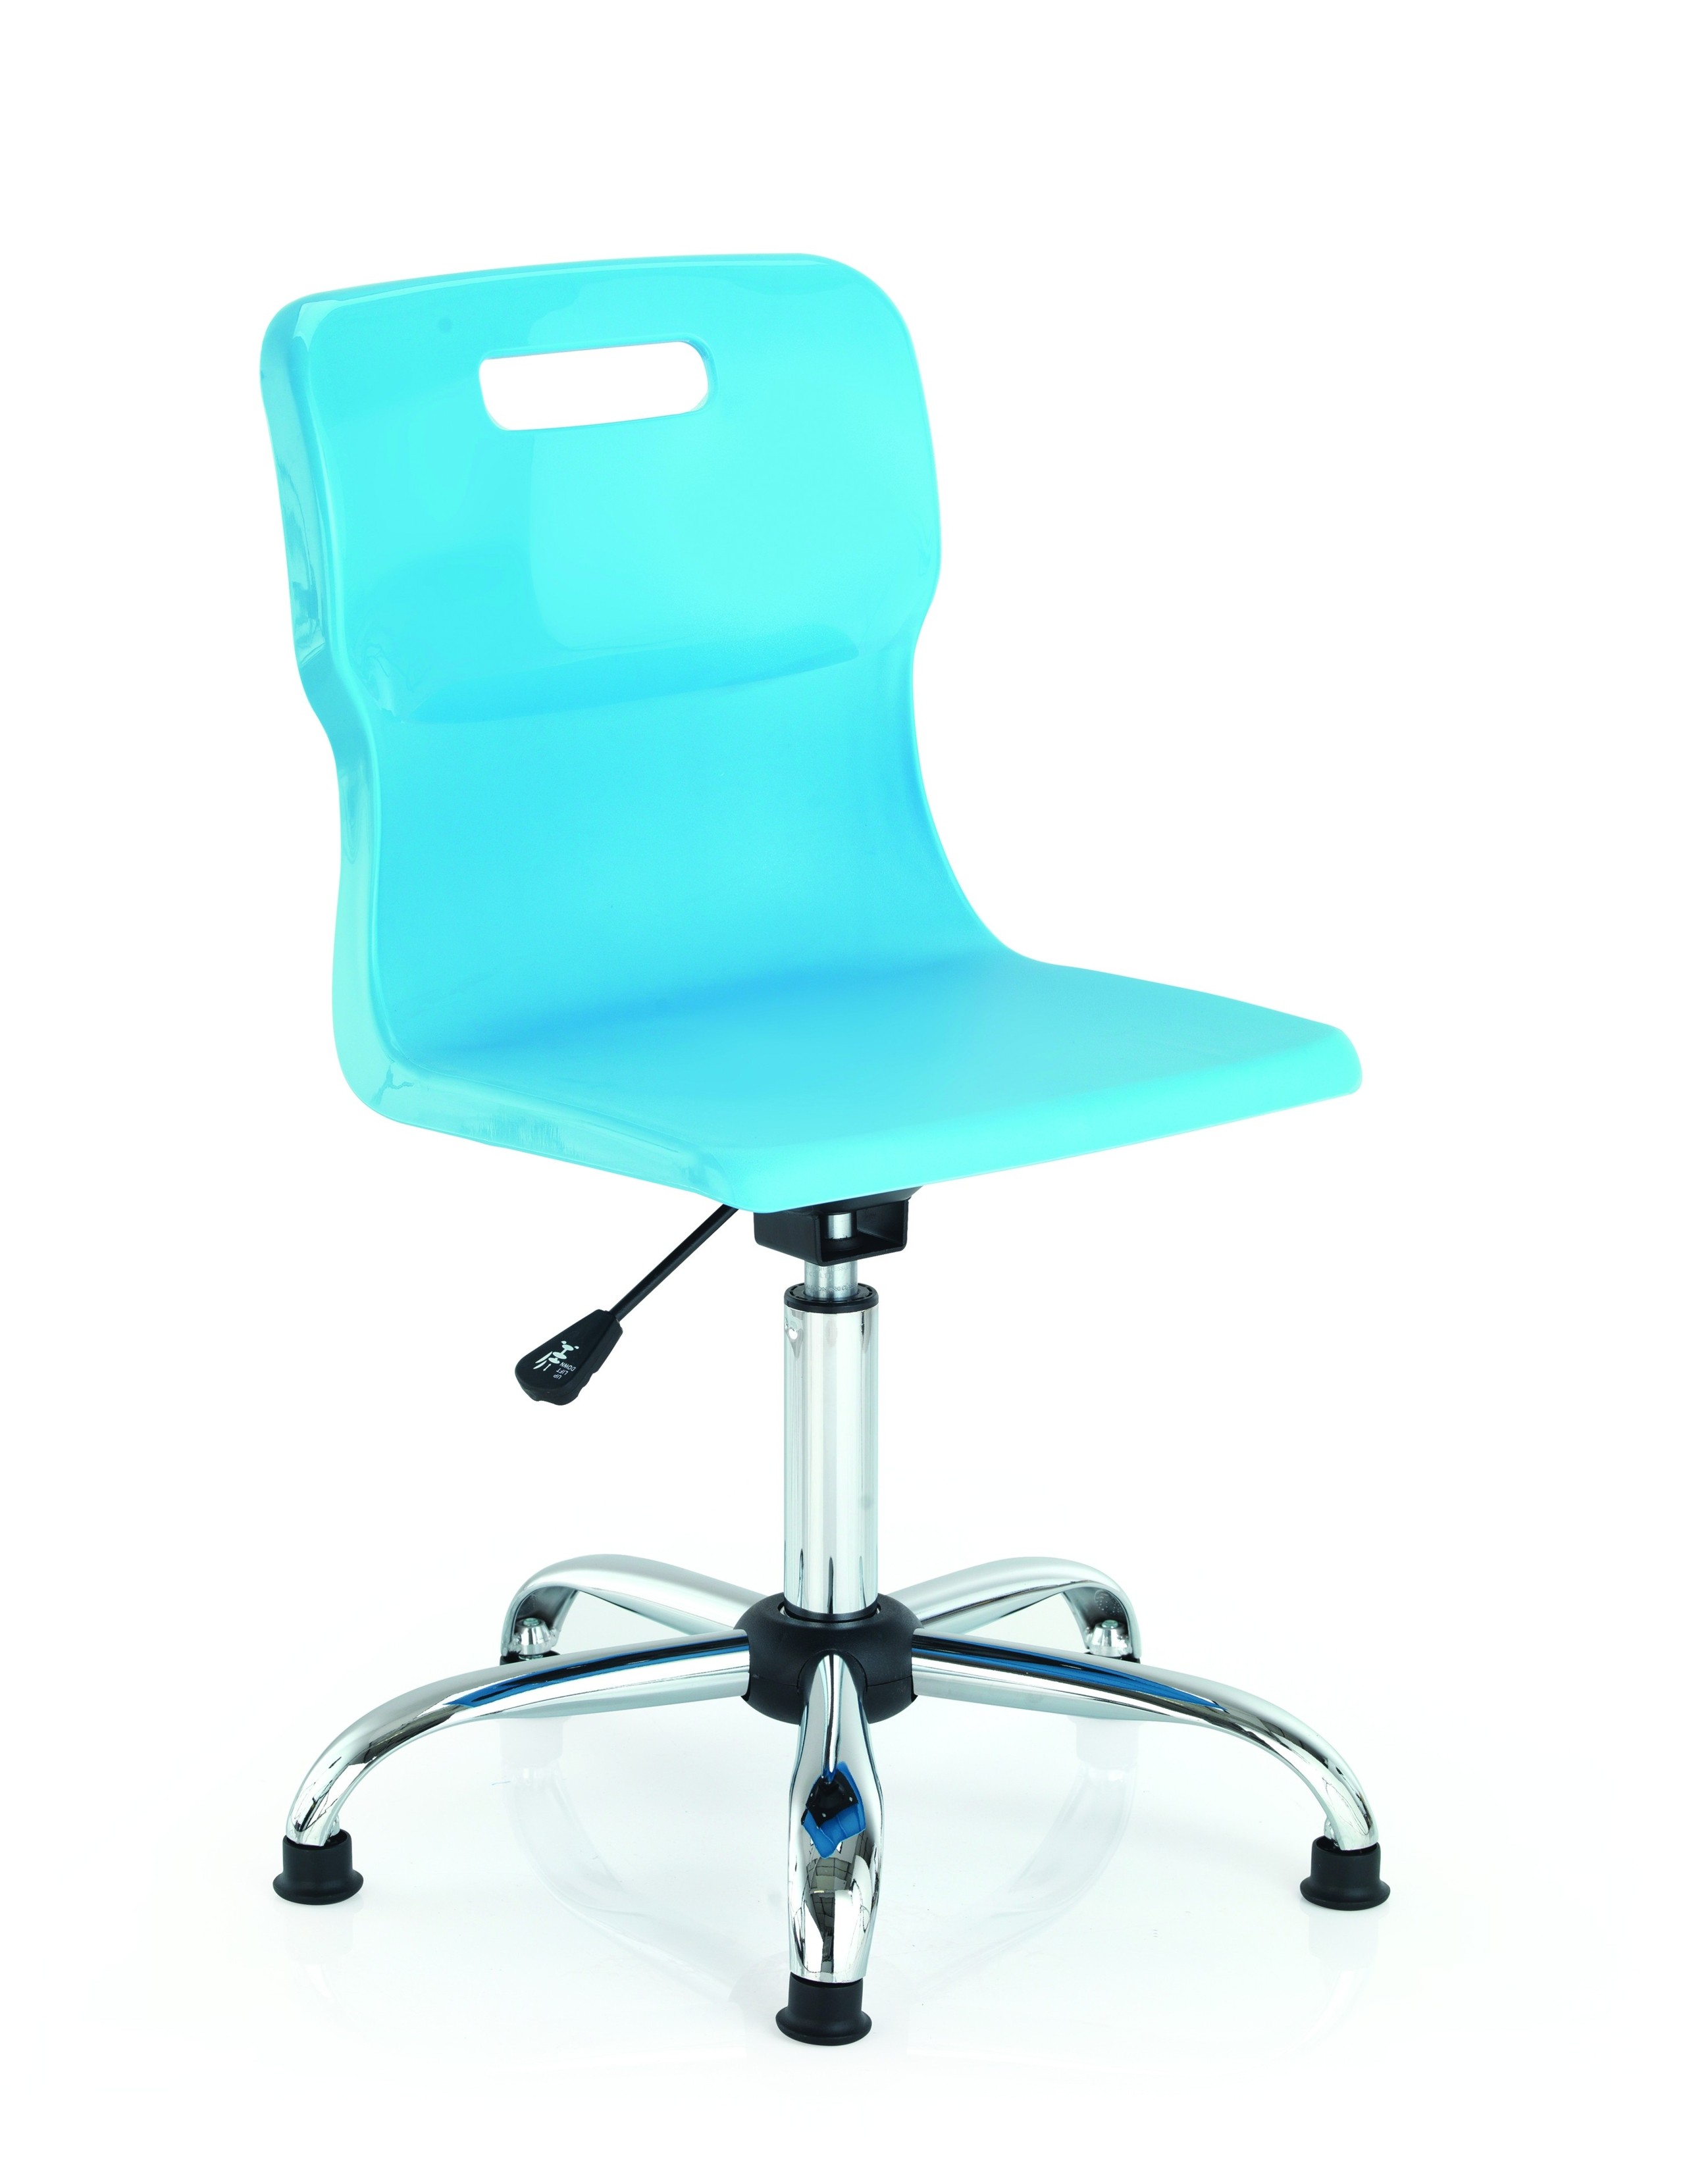 Titan classroom swivel chair in purple furniture and